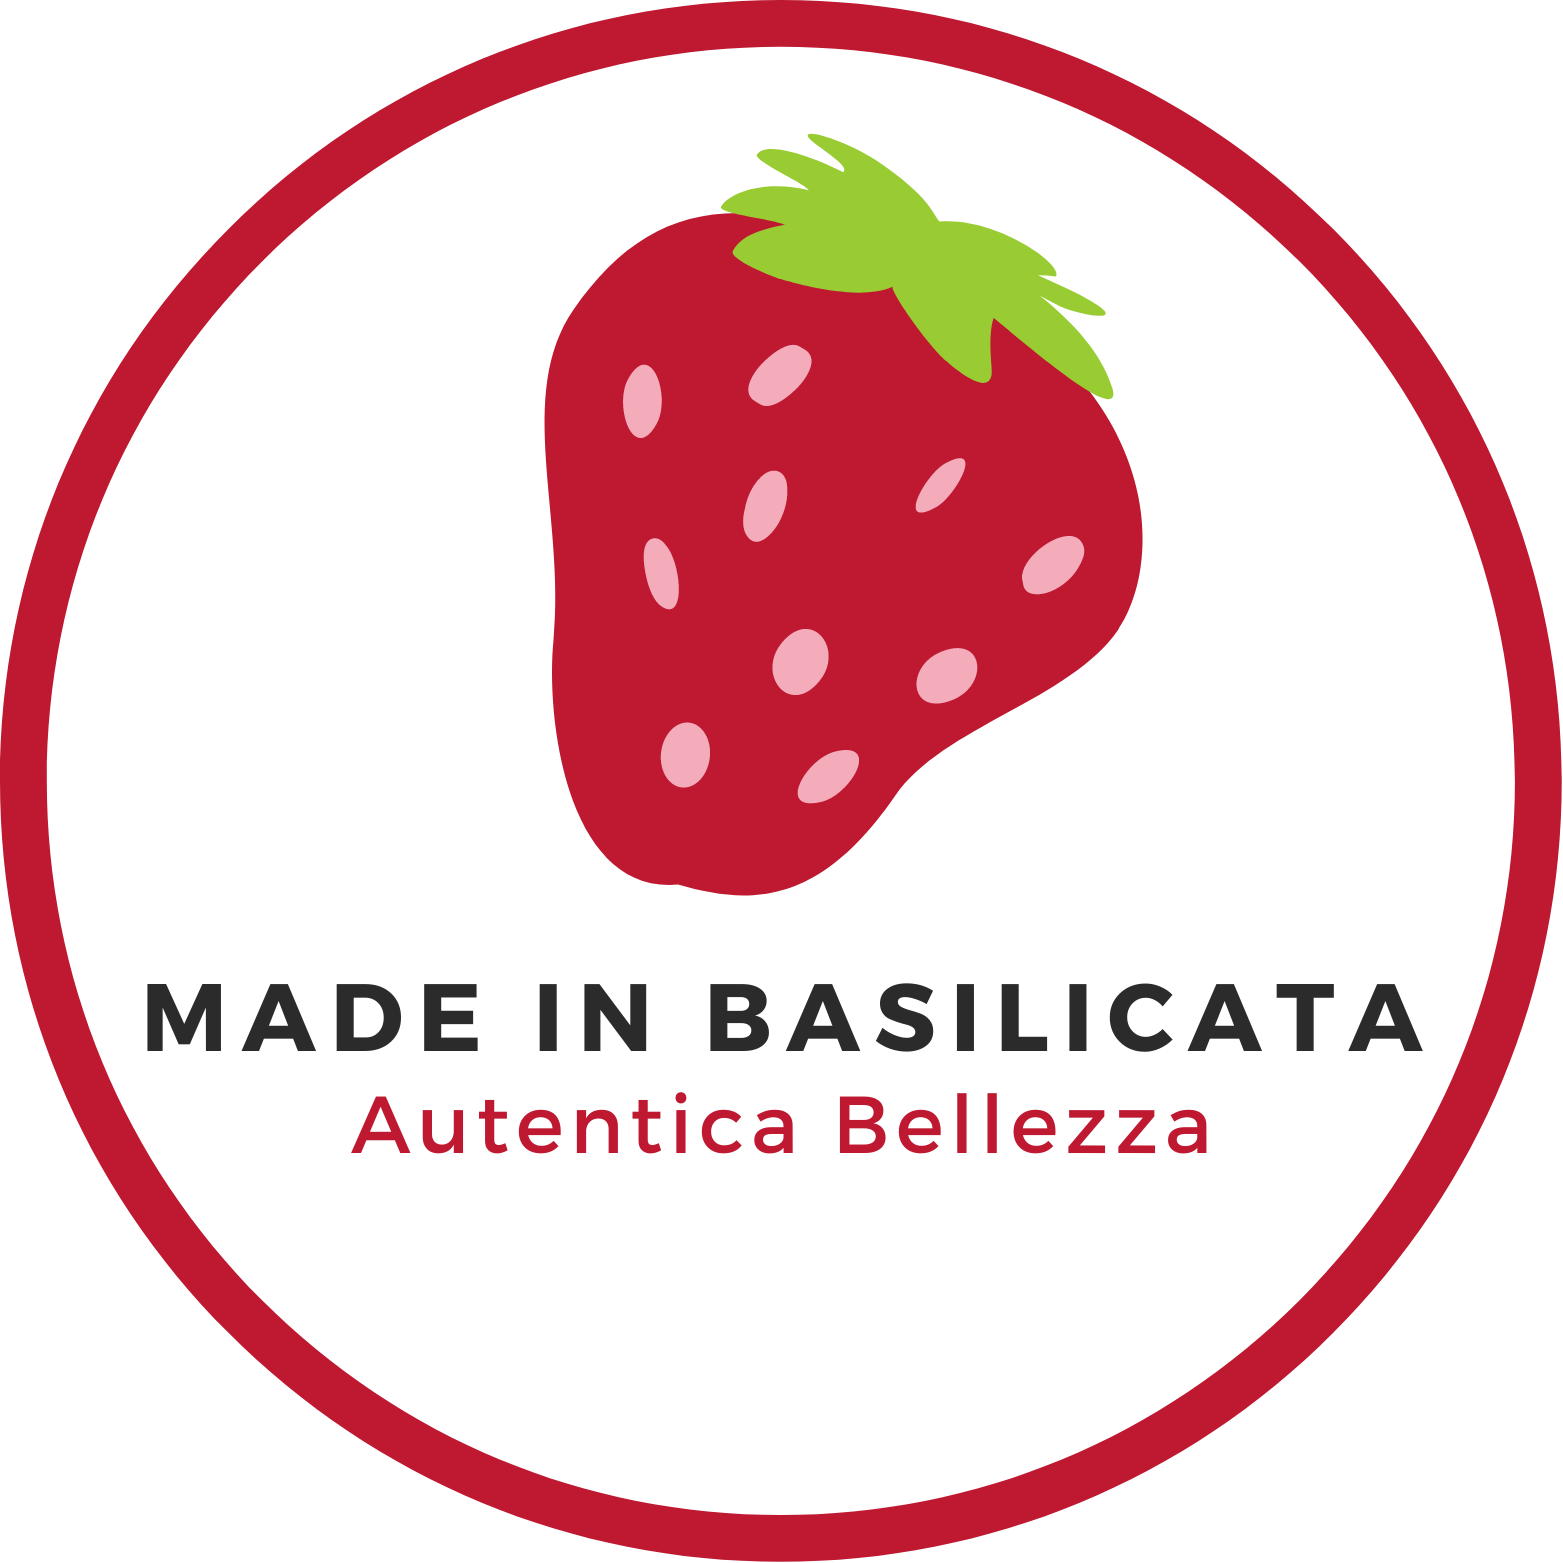 Made in Basilicata